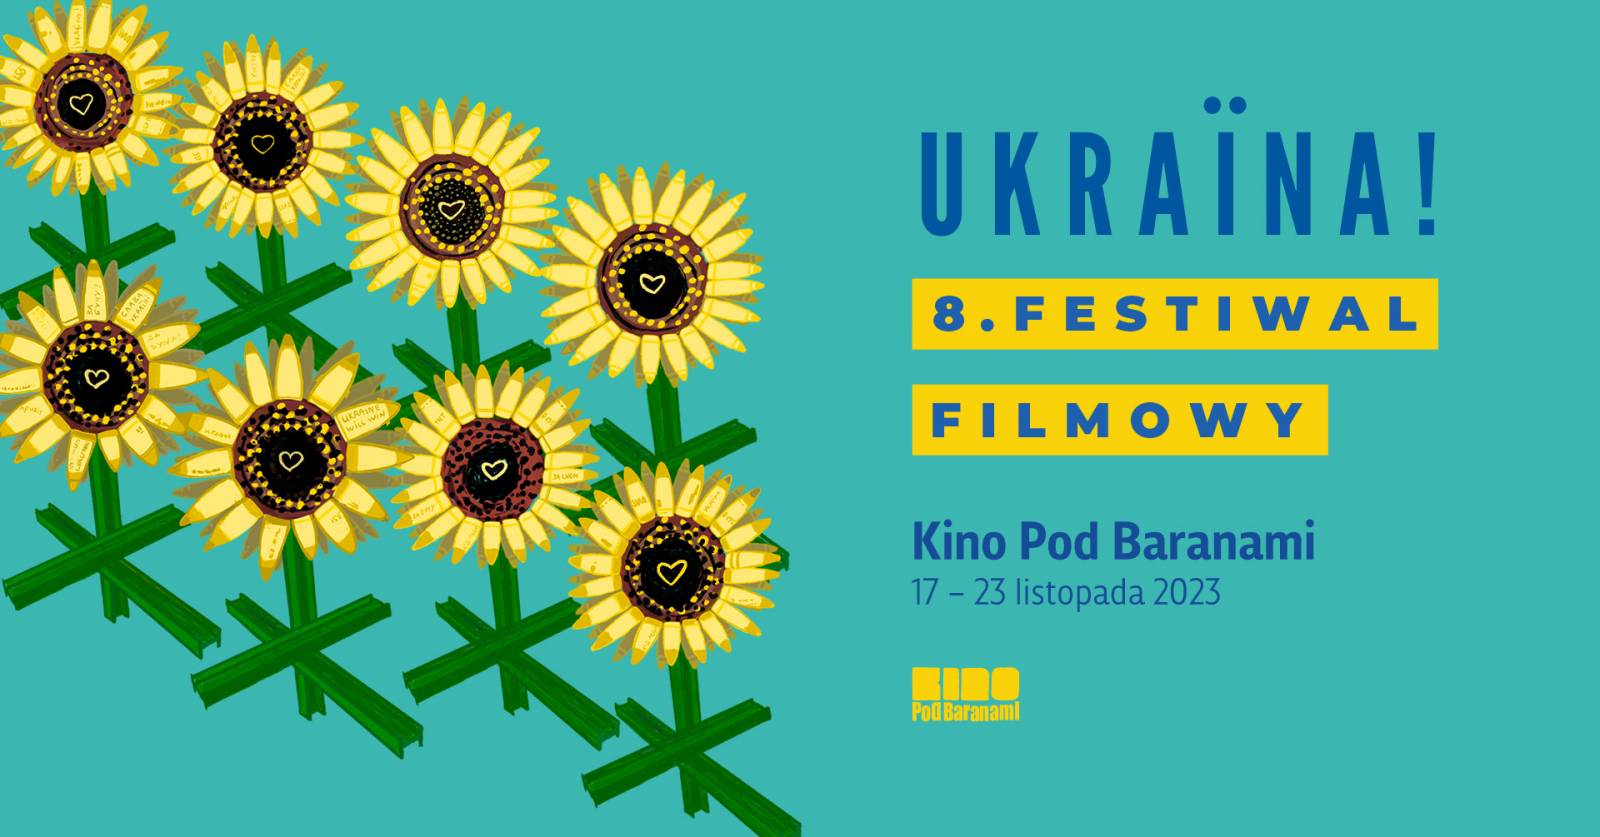 Ukraina! 8. Festiwal Filmowy w Kinie Pod Baranami